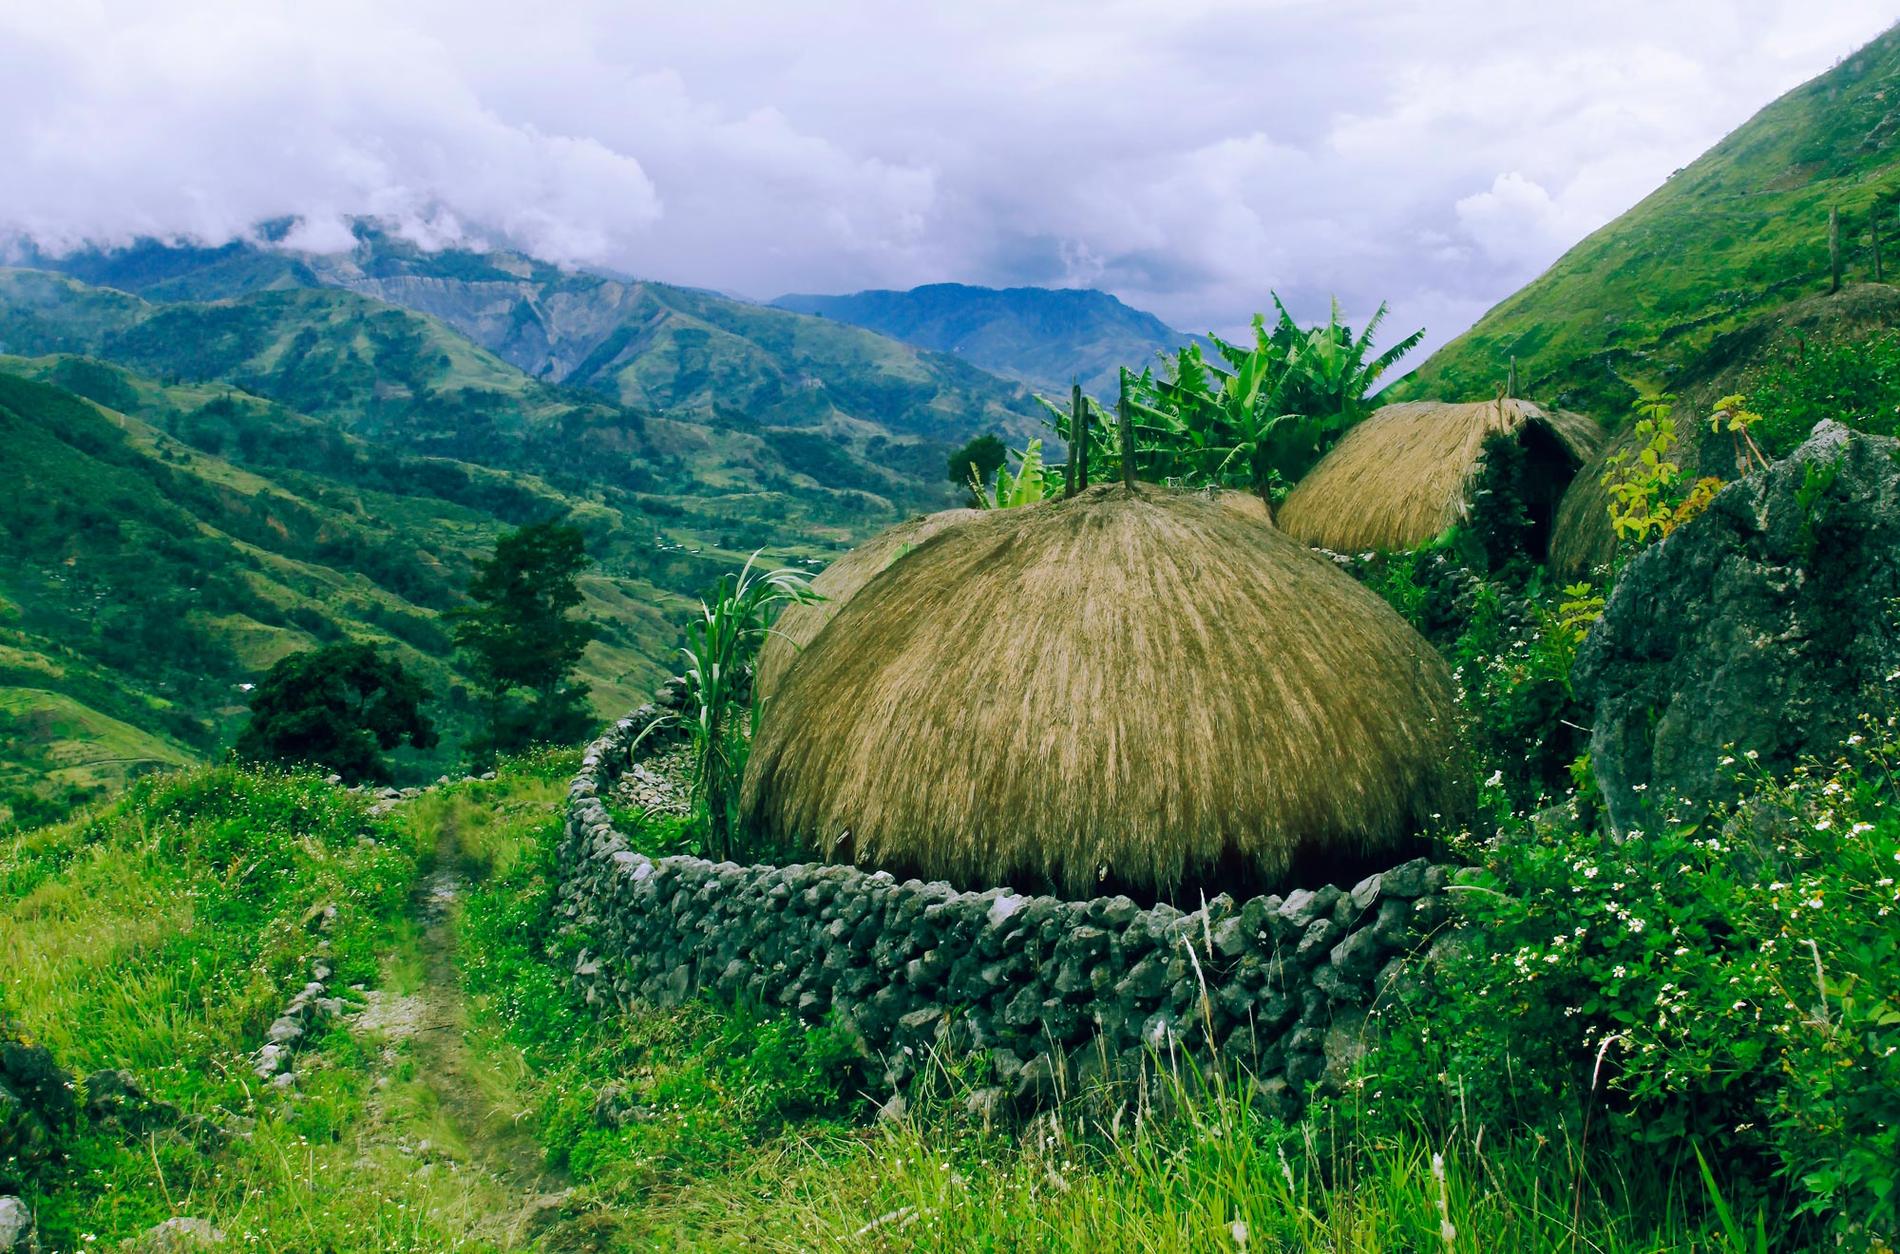 Traditionella hyddor med halmtak är typiska för Baliemdalen.